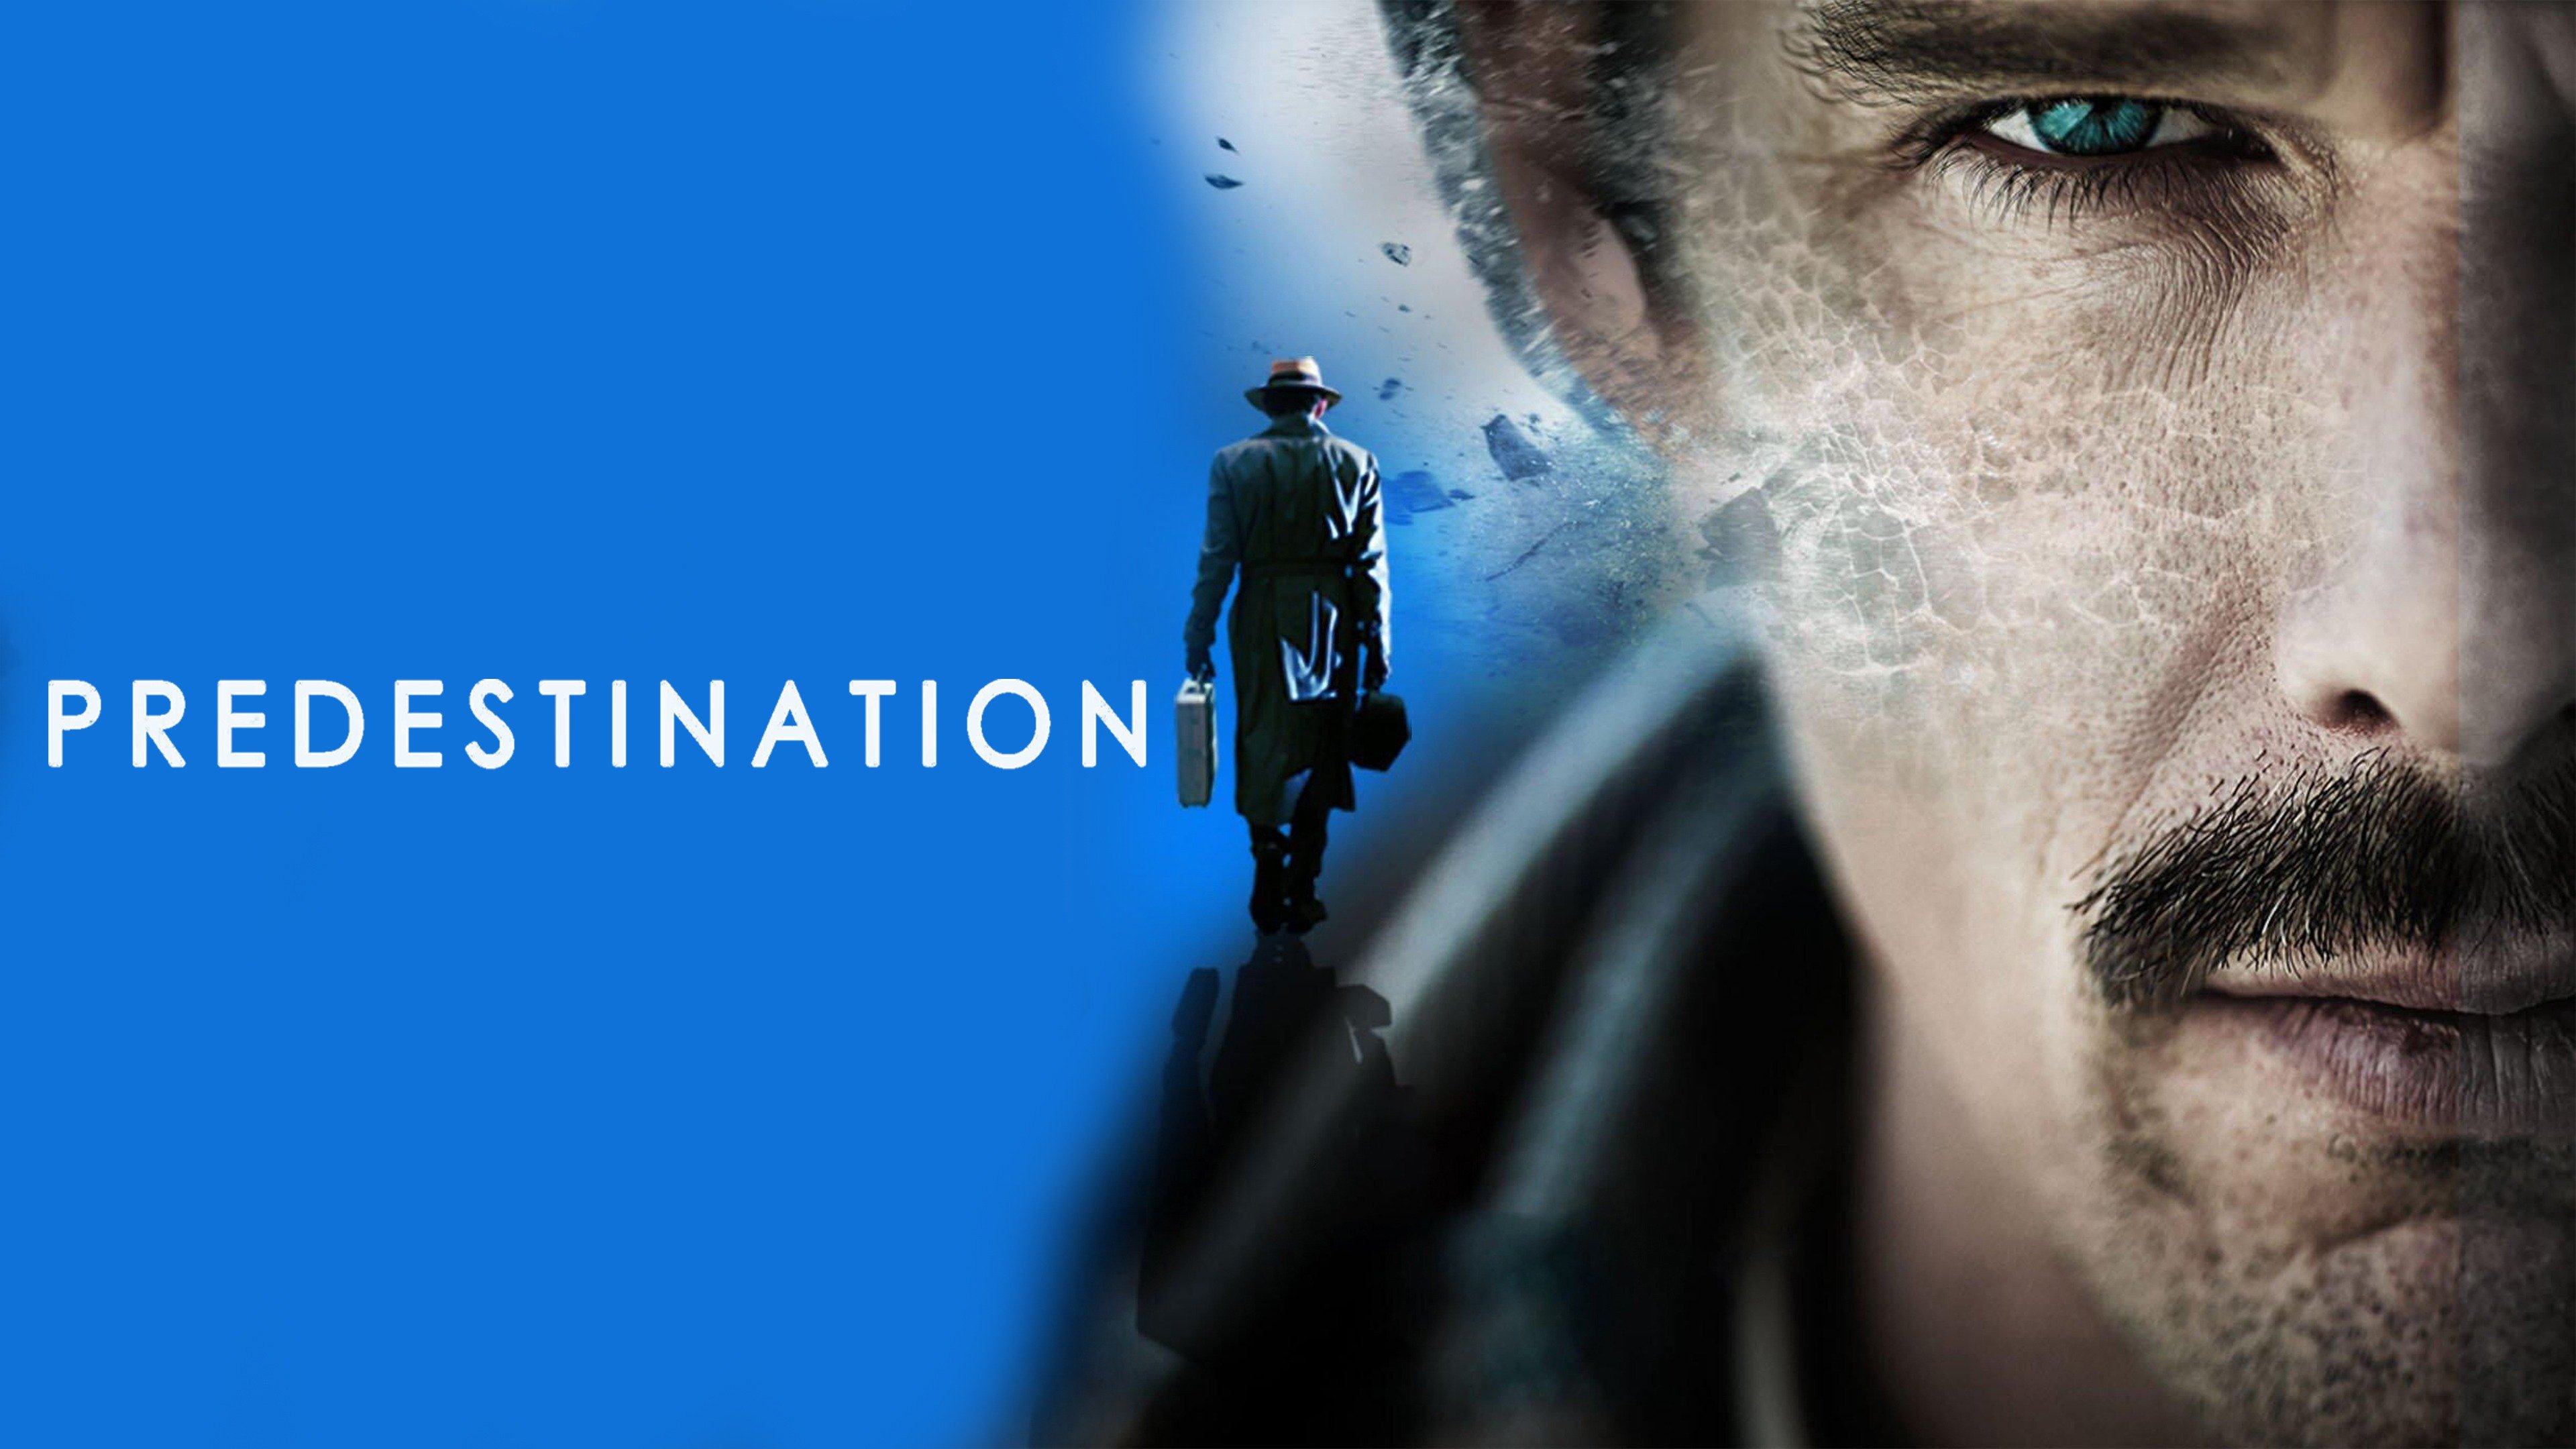 Predestination Official International Trailer #1 (2014) - Ethan Hawke  Sci-Fi Thriller HD - YouTube